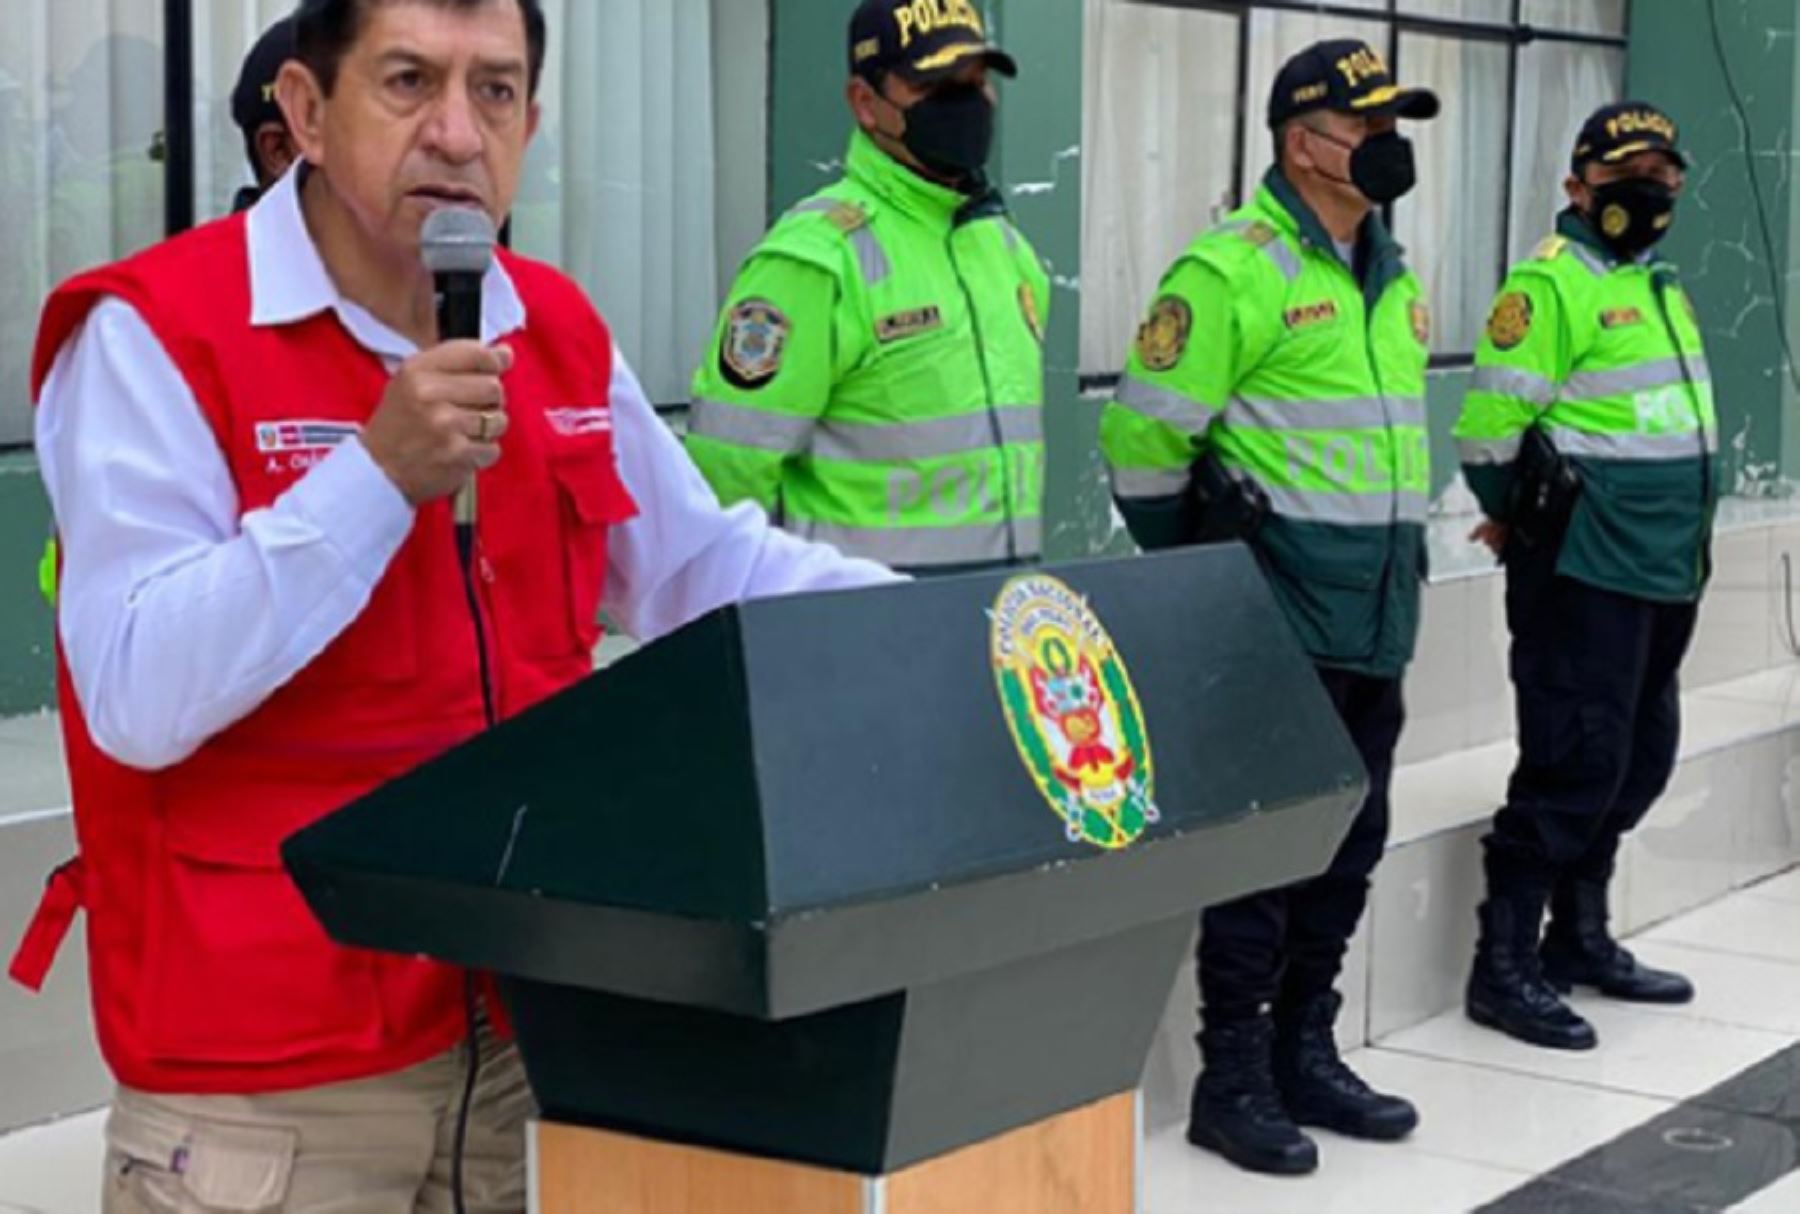 El ministro del Interior, Alfonso Chávarry Estrada, destacó hoy en Puno la labor que realiza la Sucamec y la Policía Nacional del Perú al presentar la recuperación de 81 armas de fuego, en solo una semana; así como productos de contrabando y la recuperación de vehículos de dudosa procedencia.